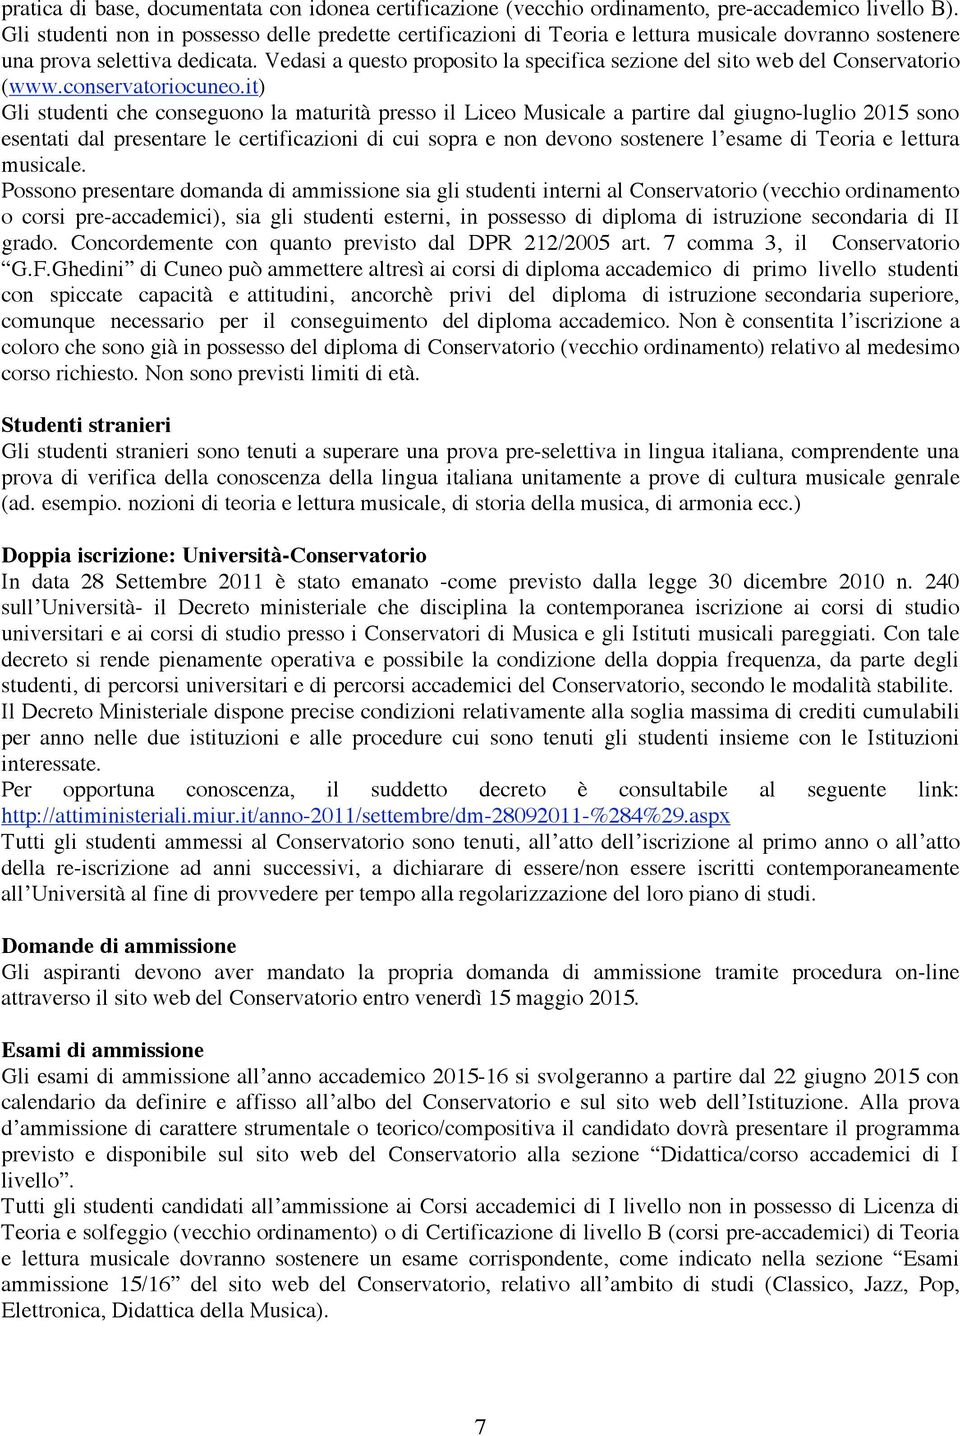 Vedasi a questo proposito la specifica sezione del sito web del Conservatorio (www.conservatoriocuneo.